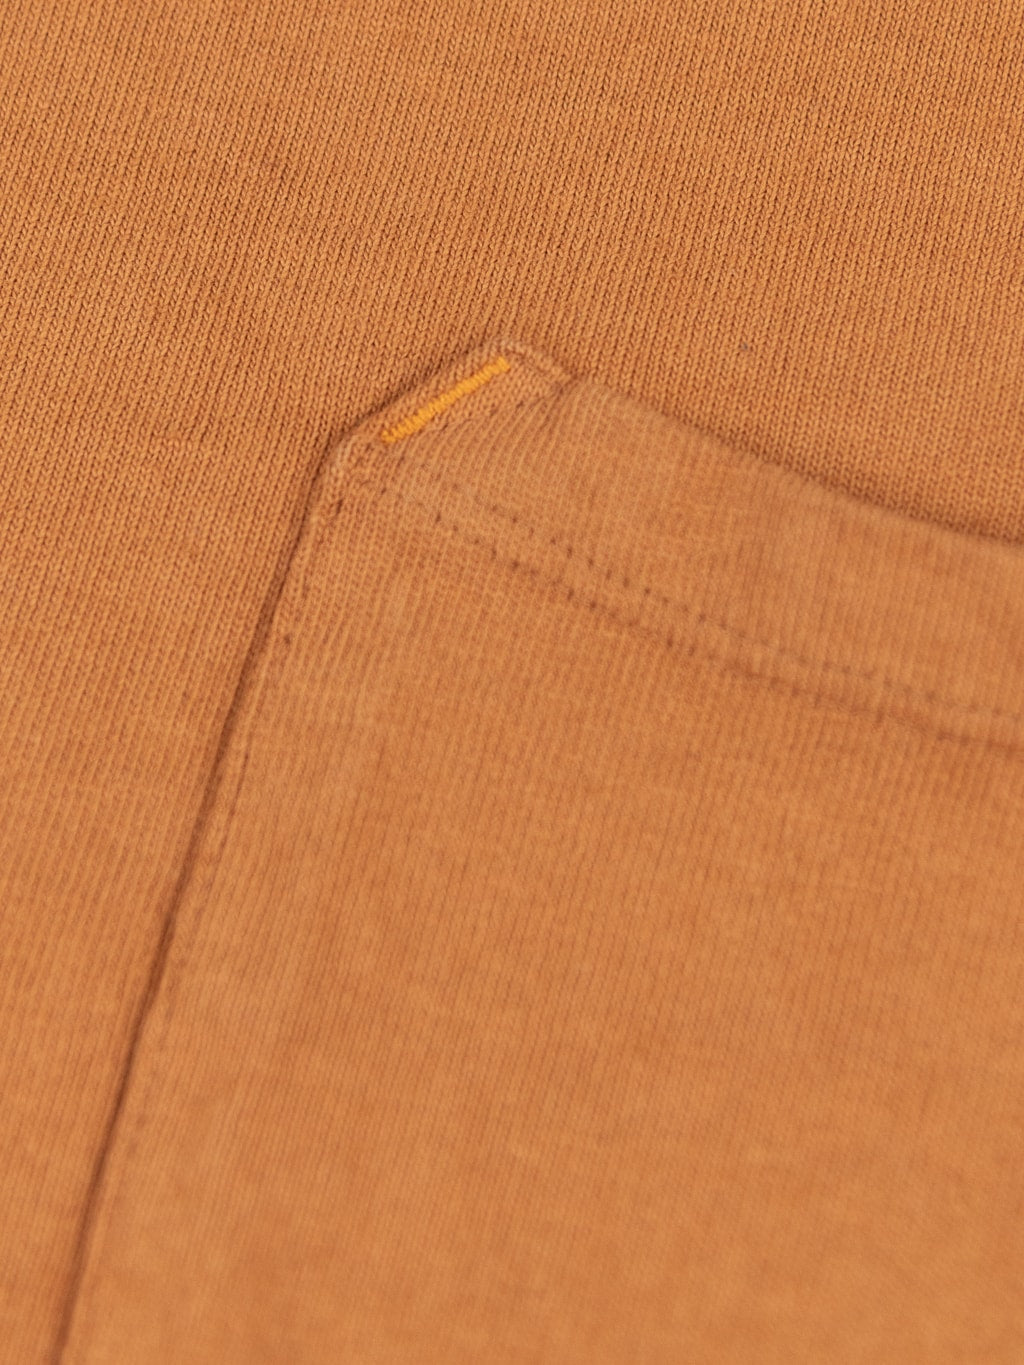 Freenote Cloth 13oz Pocket Tshirt Tobacco texture